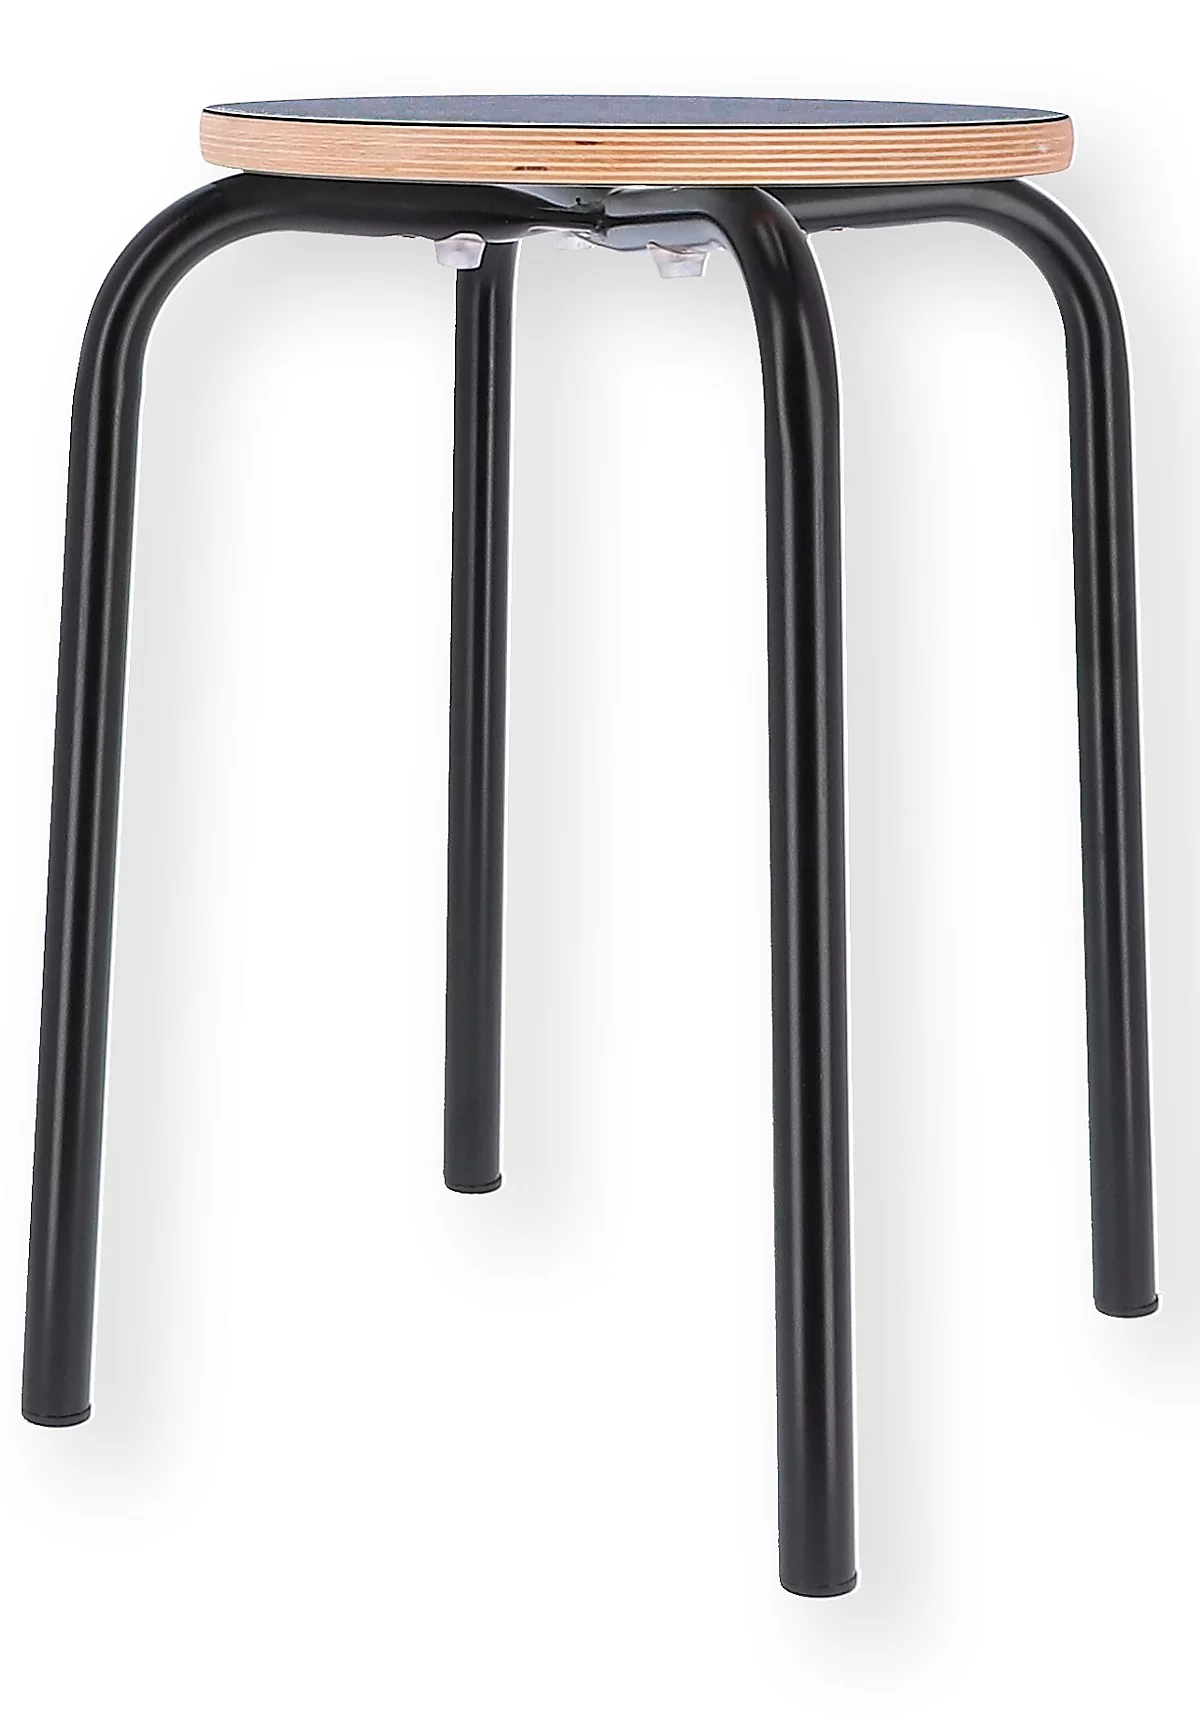 Hocker PARIS, stapelbar, Rundrohrfuß-Gestell, Ø 330 x T 330 x H 460 mm, schwarz/schwarz